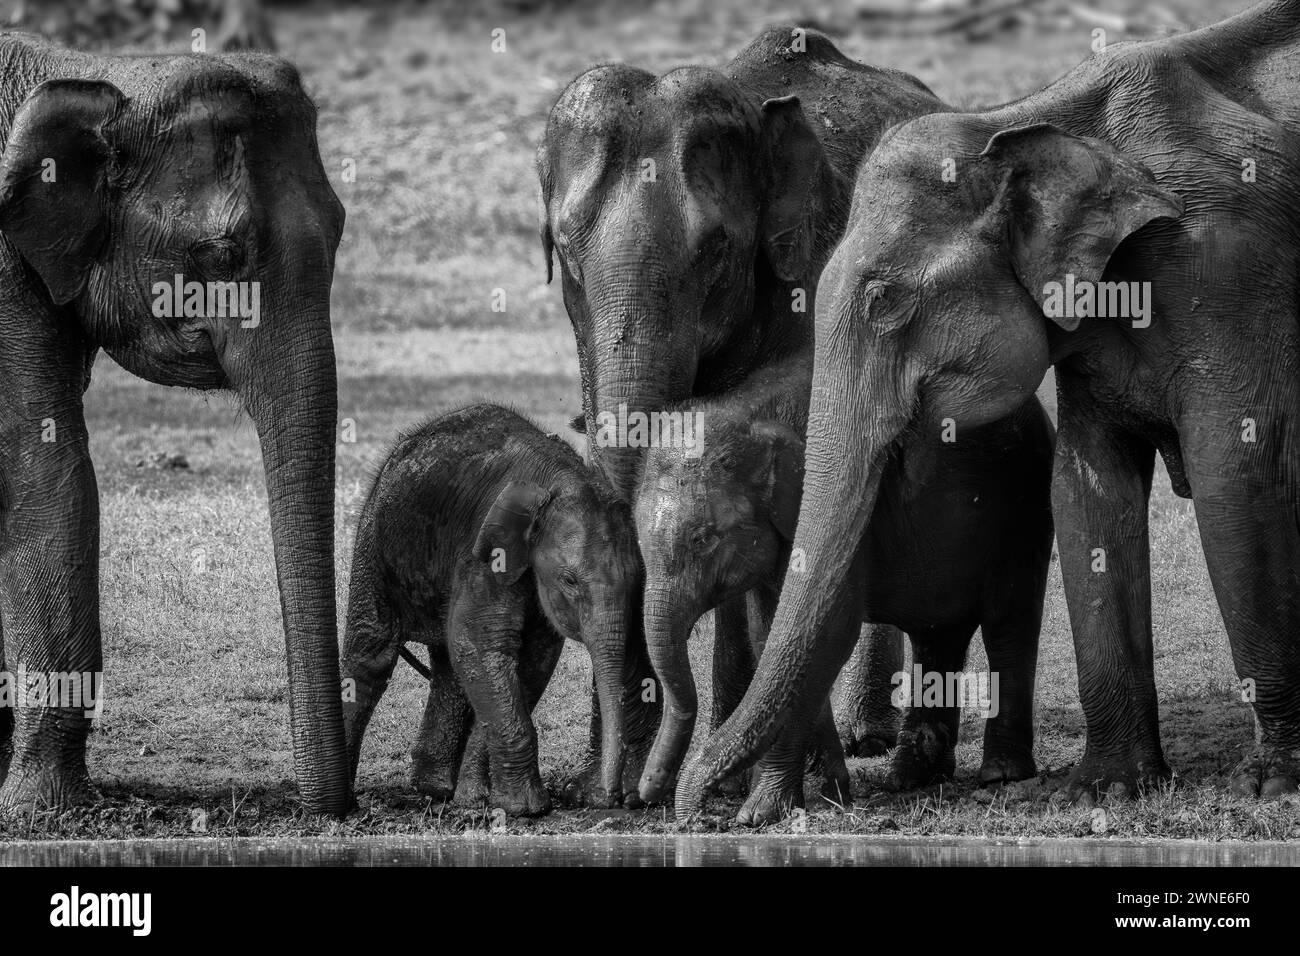 Asiatischer Elefant - Elephas maximus, wunderschönes großes, ikonisches Säugetier aus asiatischen Wäldern und Wäldern, Nagarahole Tiger Reserve, Indien. Stockfoto